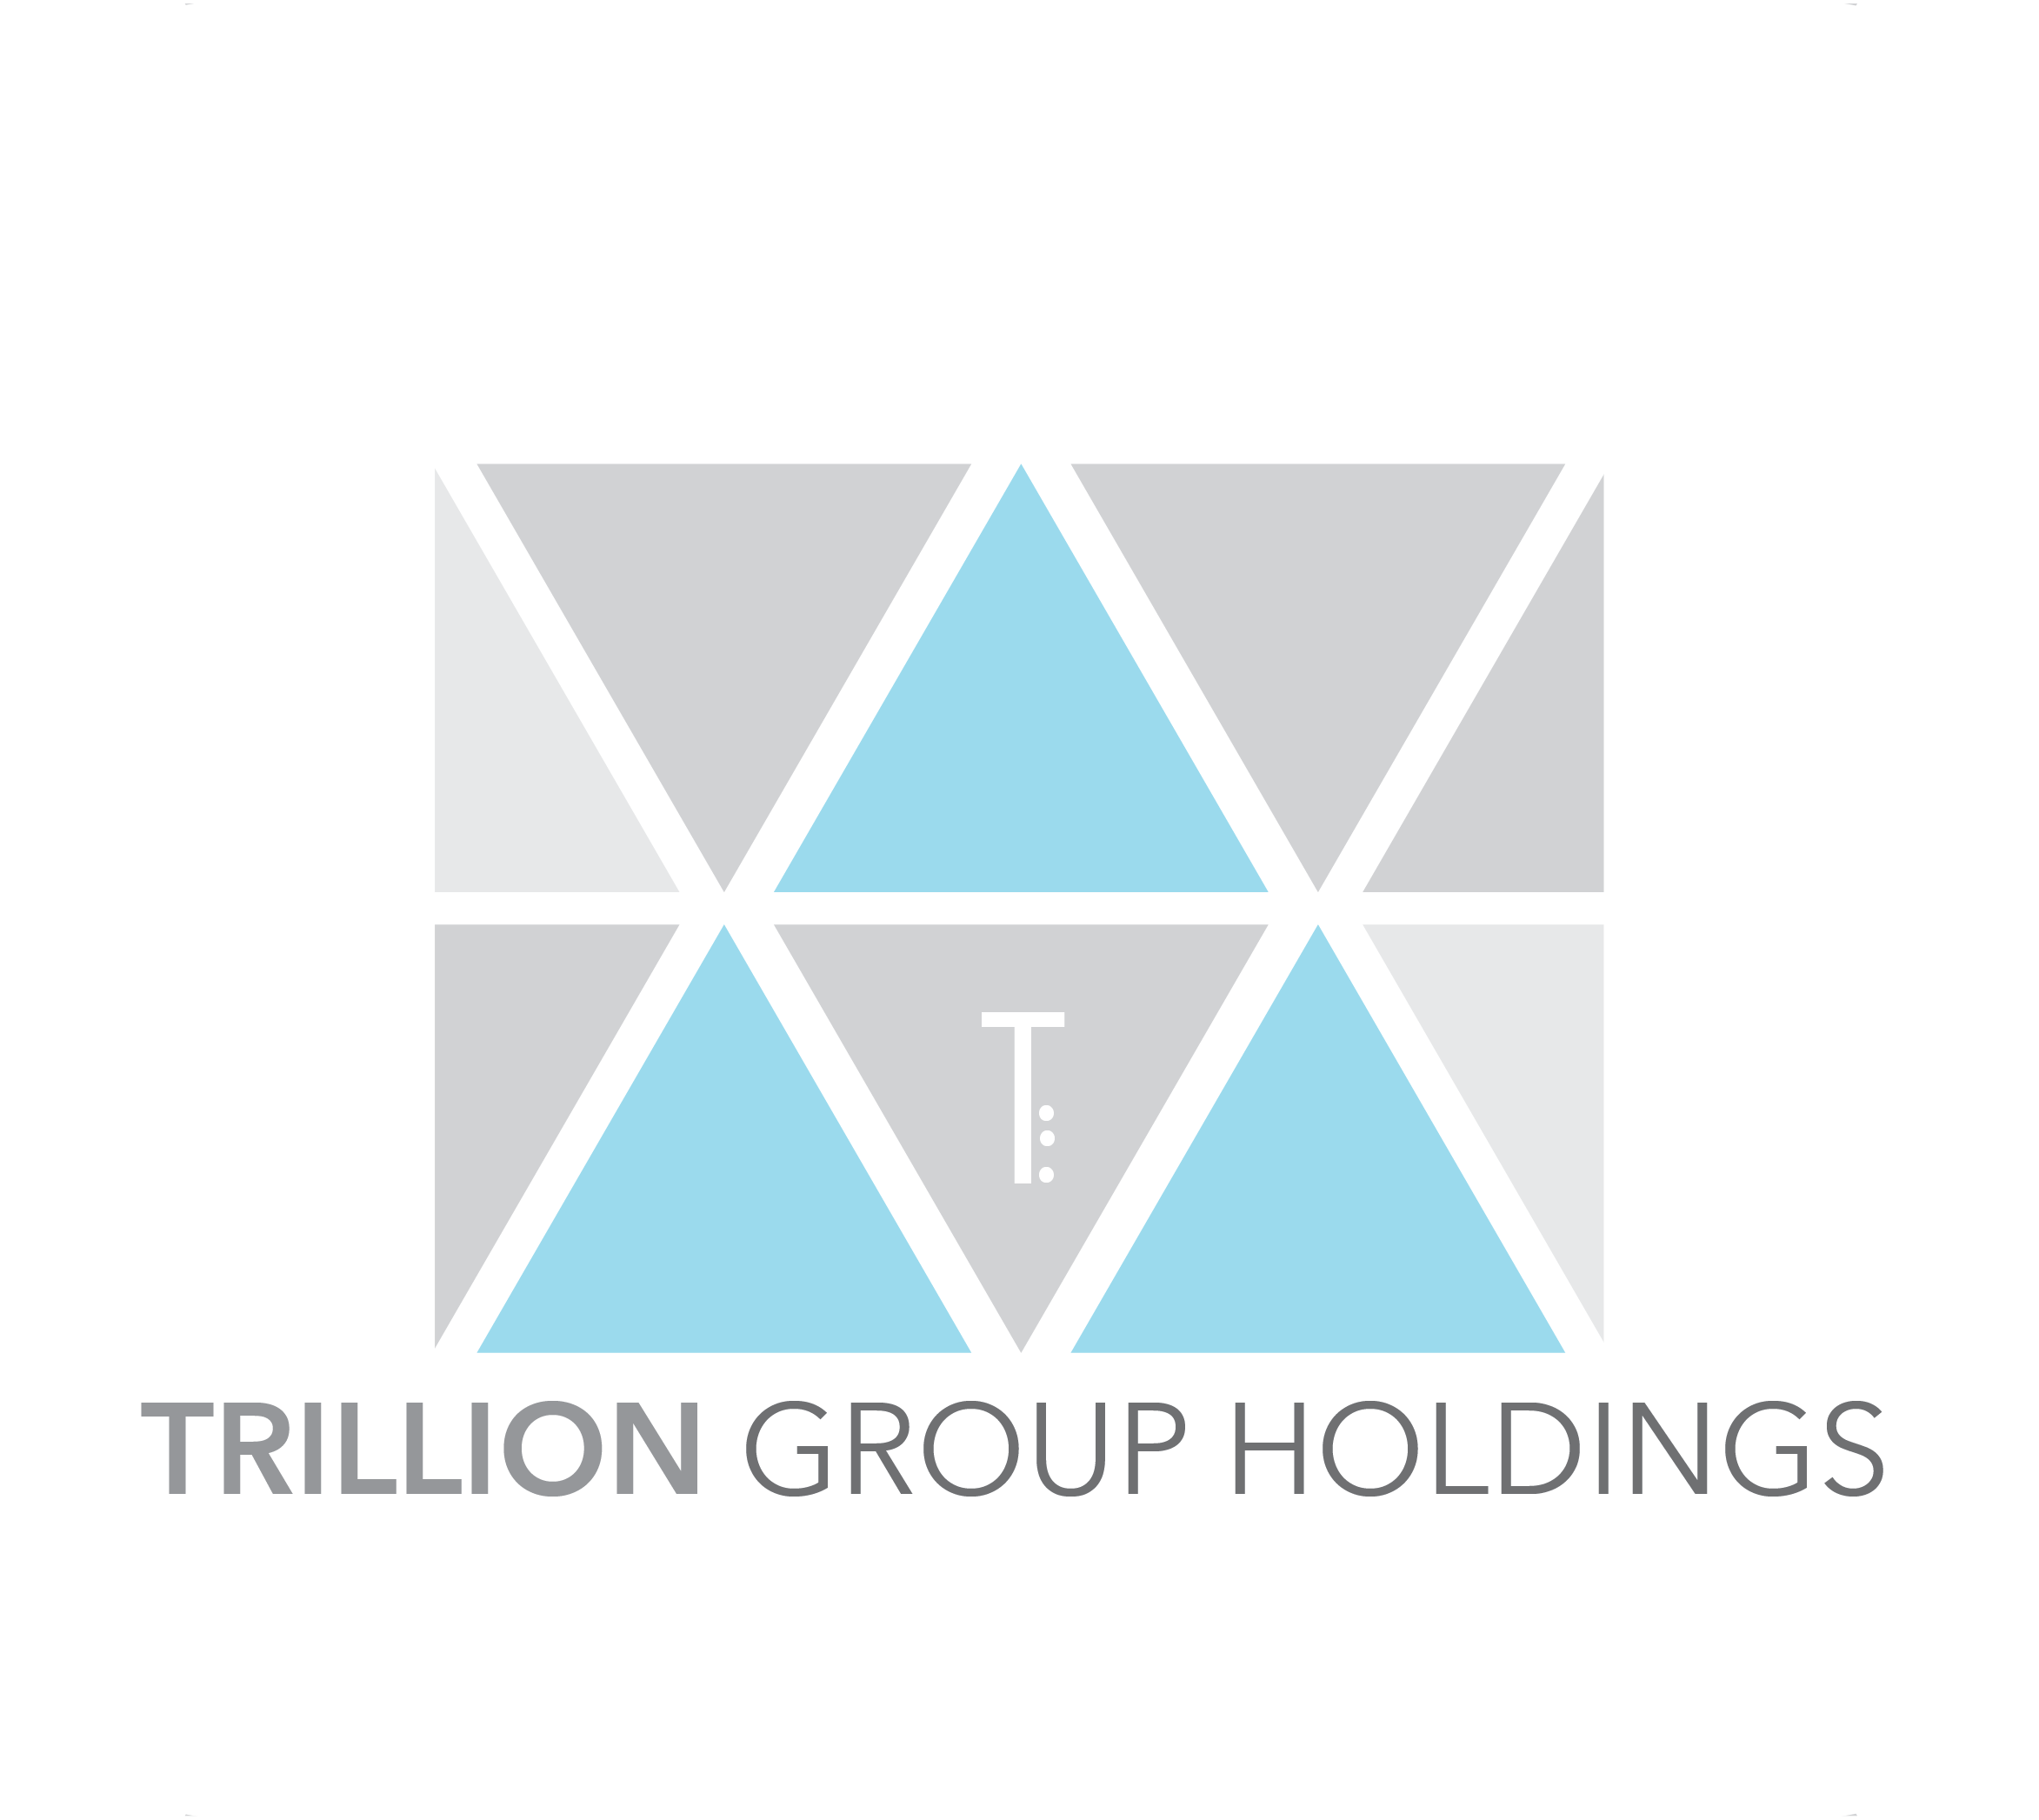 Trillion Group Holdings Pte. Ltd. logo